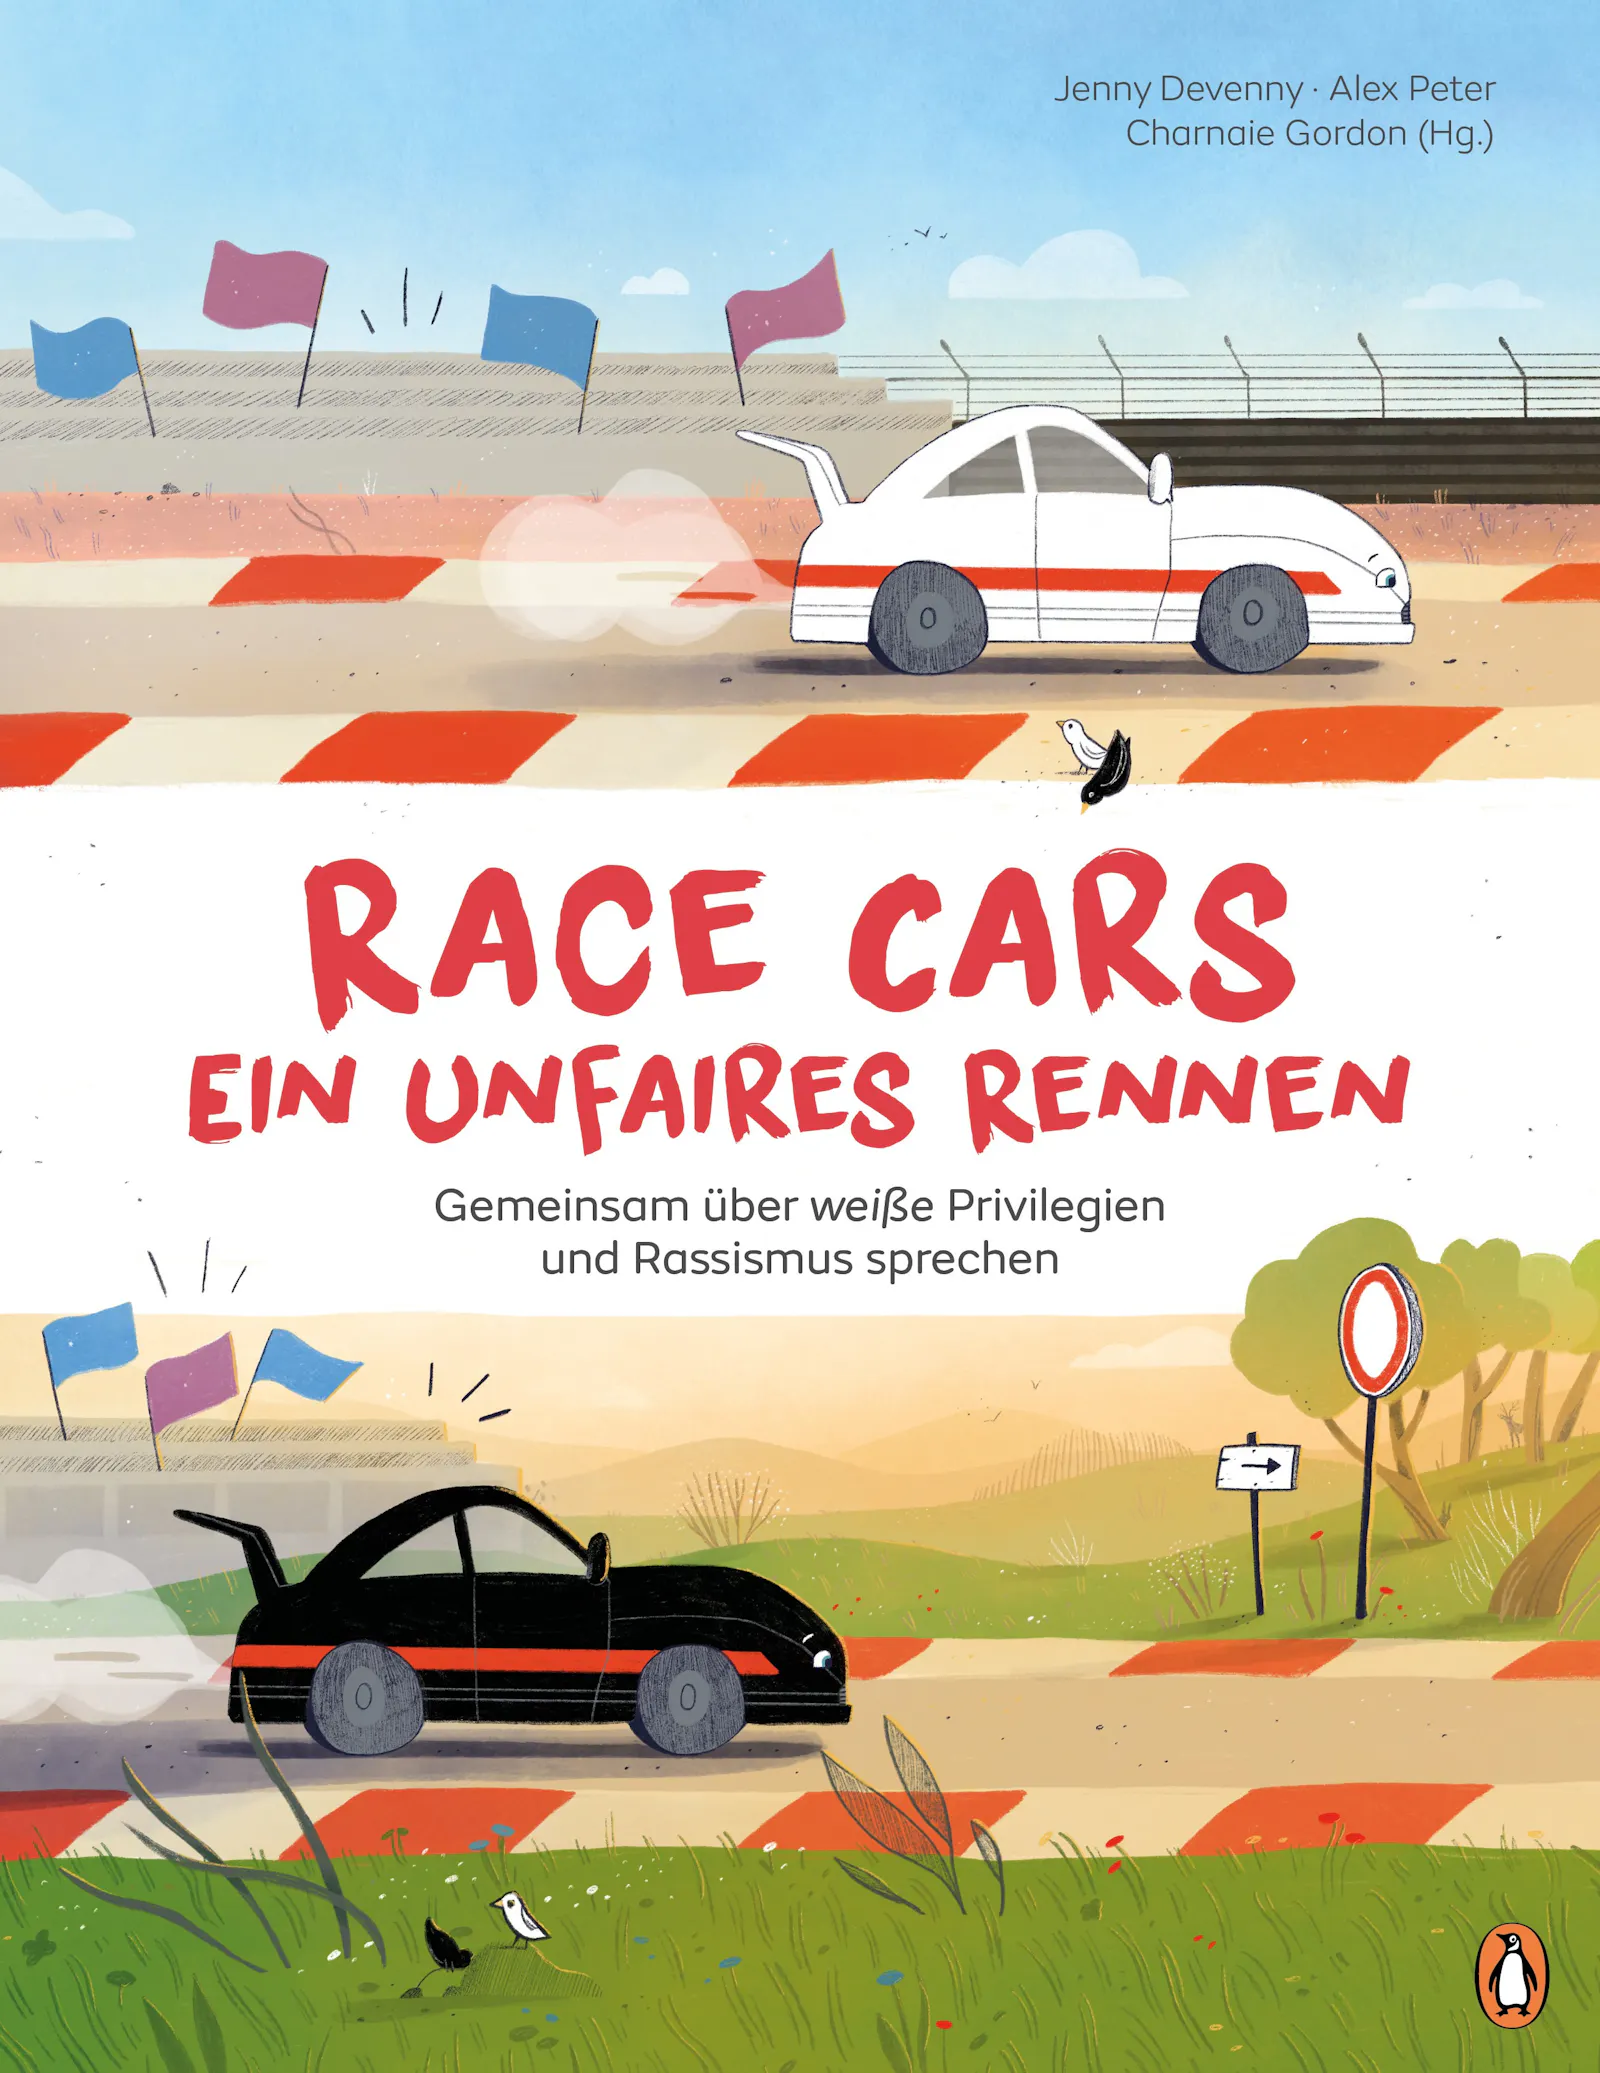 Cover von "Race Cars - Ein unfaires Rennen" von Jenny Devenny und Alex Peter, erschienen im Penguin Junior Verlag.